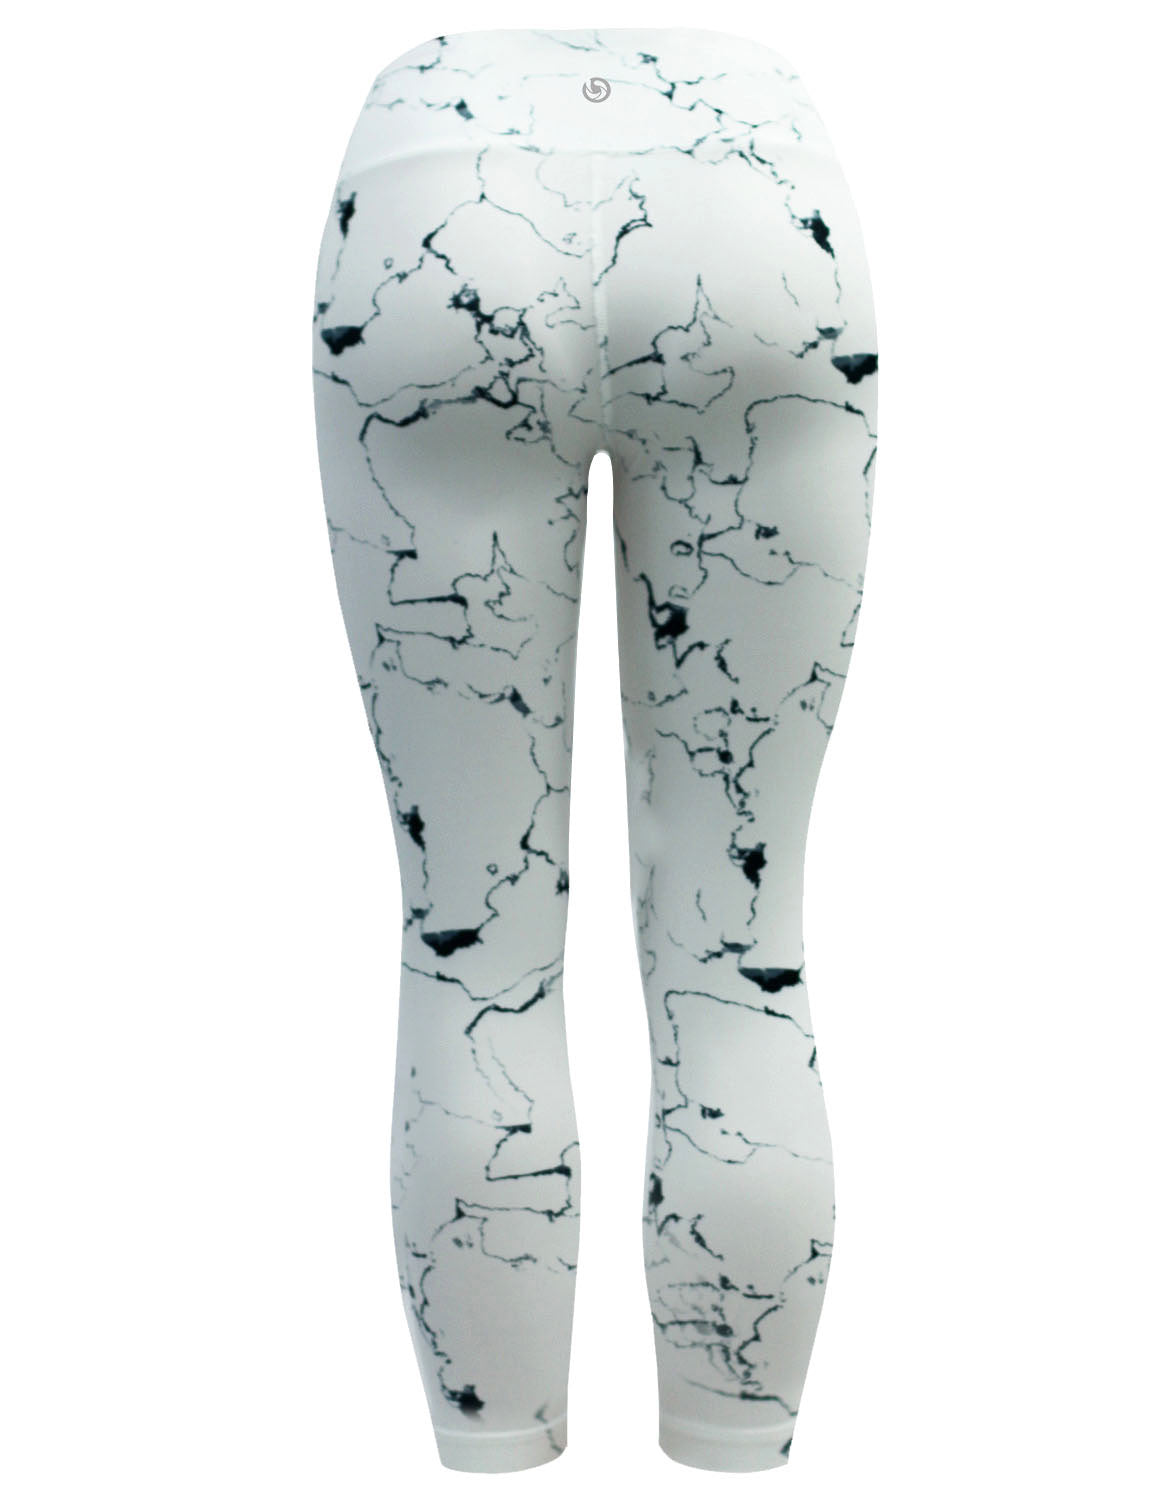 22" Printed Yoga Pants WHITETHUNDER